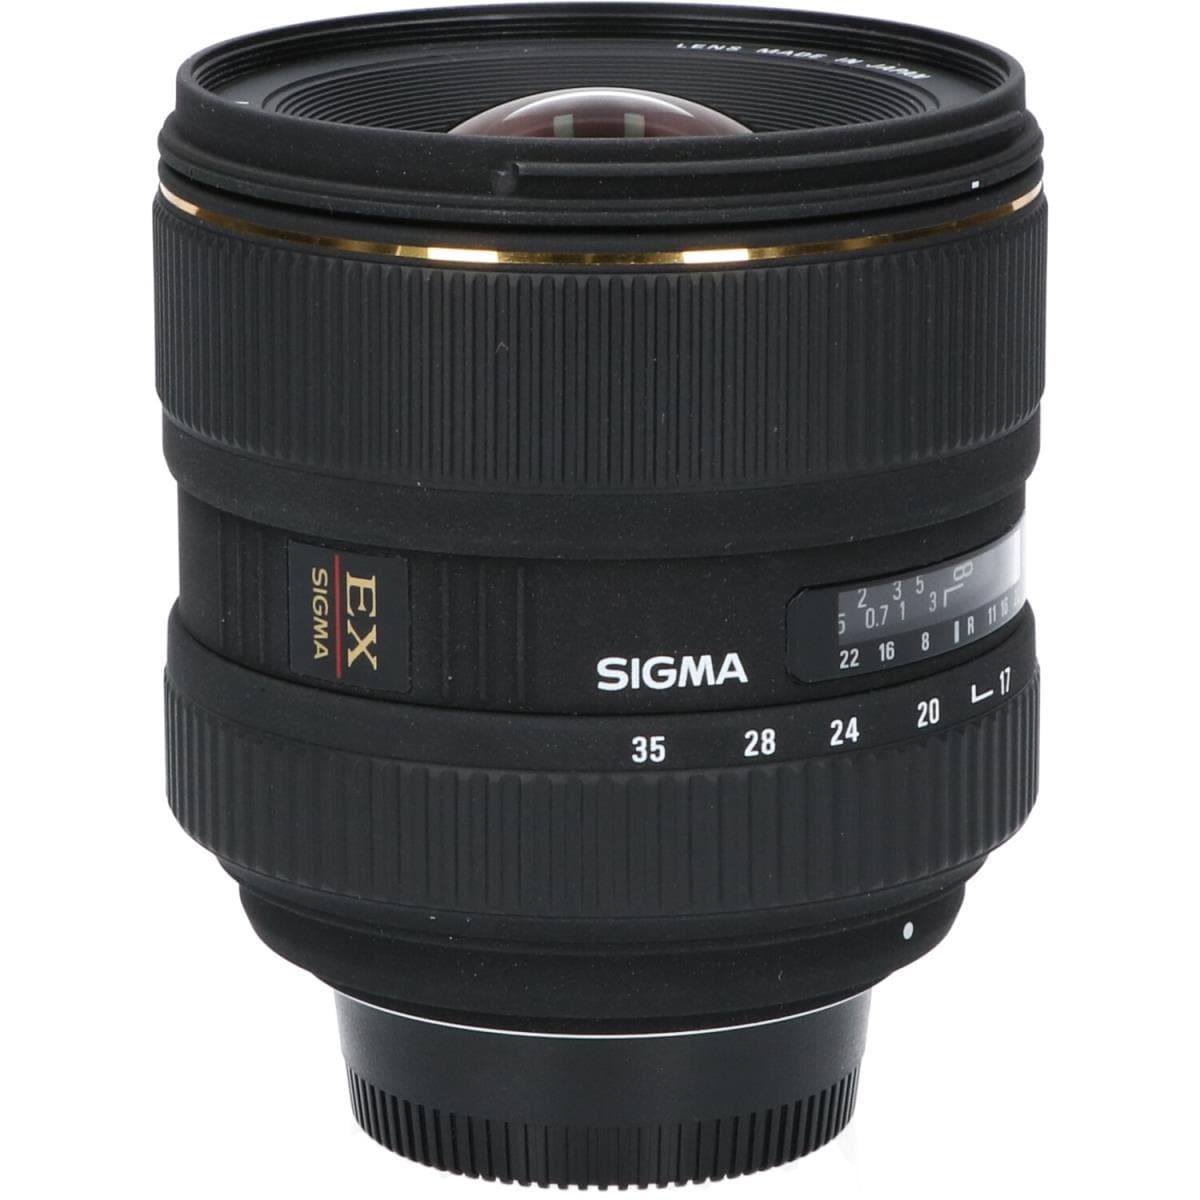 SIGMA尼康17-35mm F2.8-4EX DG HSM